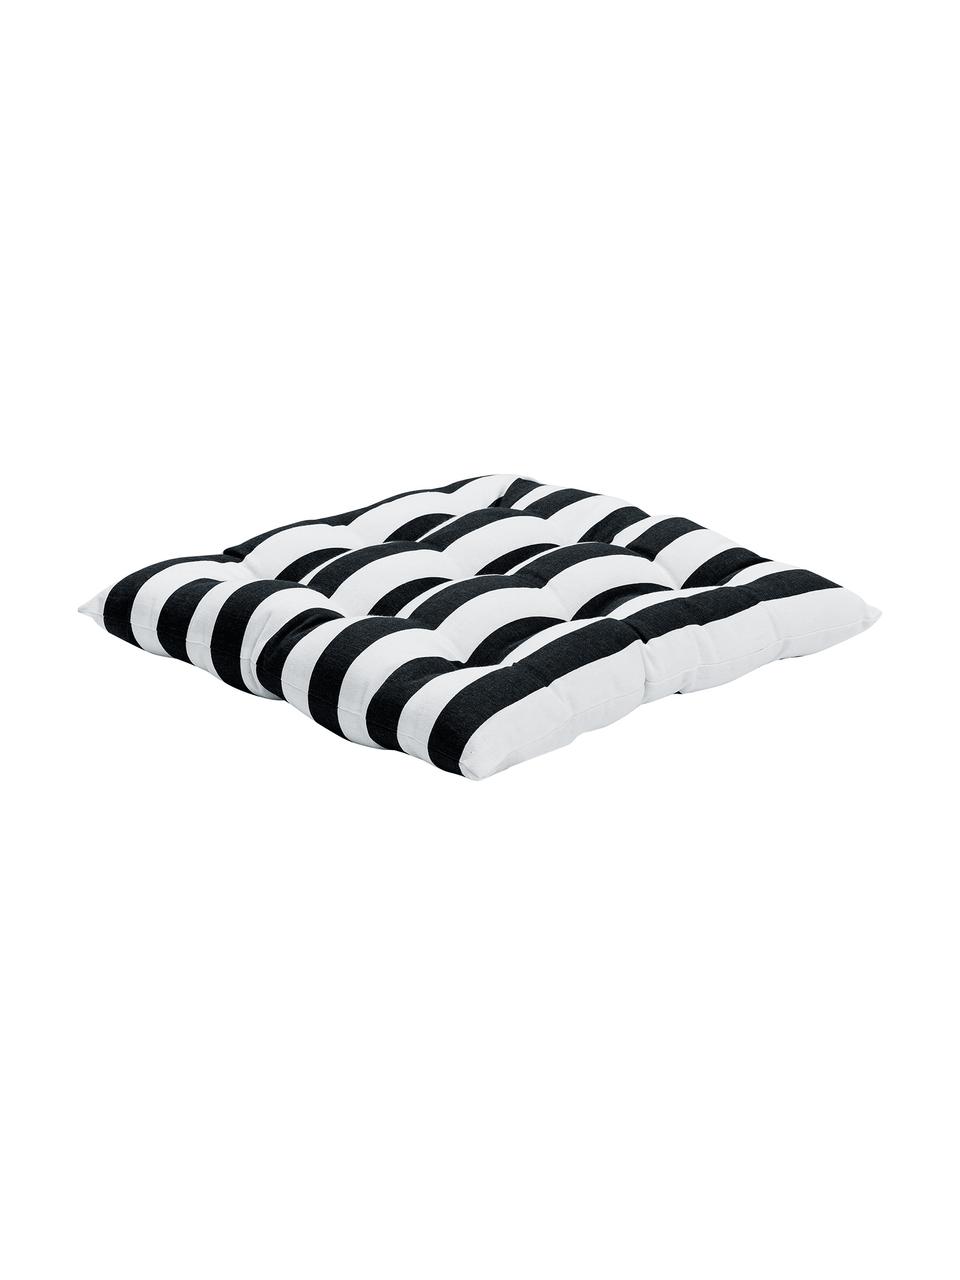 Poduszka na krzesło Timon, Czarny, biały, S 40 x D 40 cm